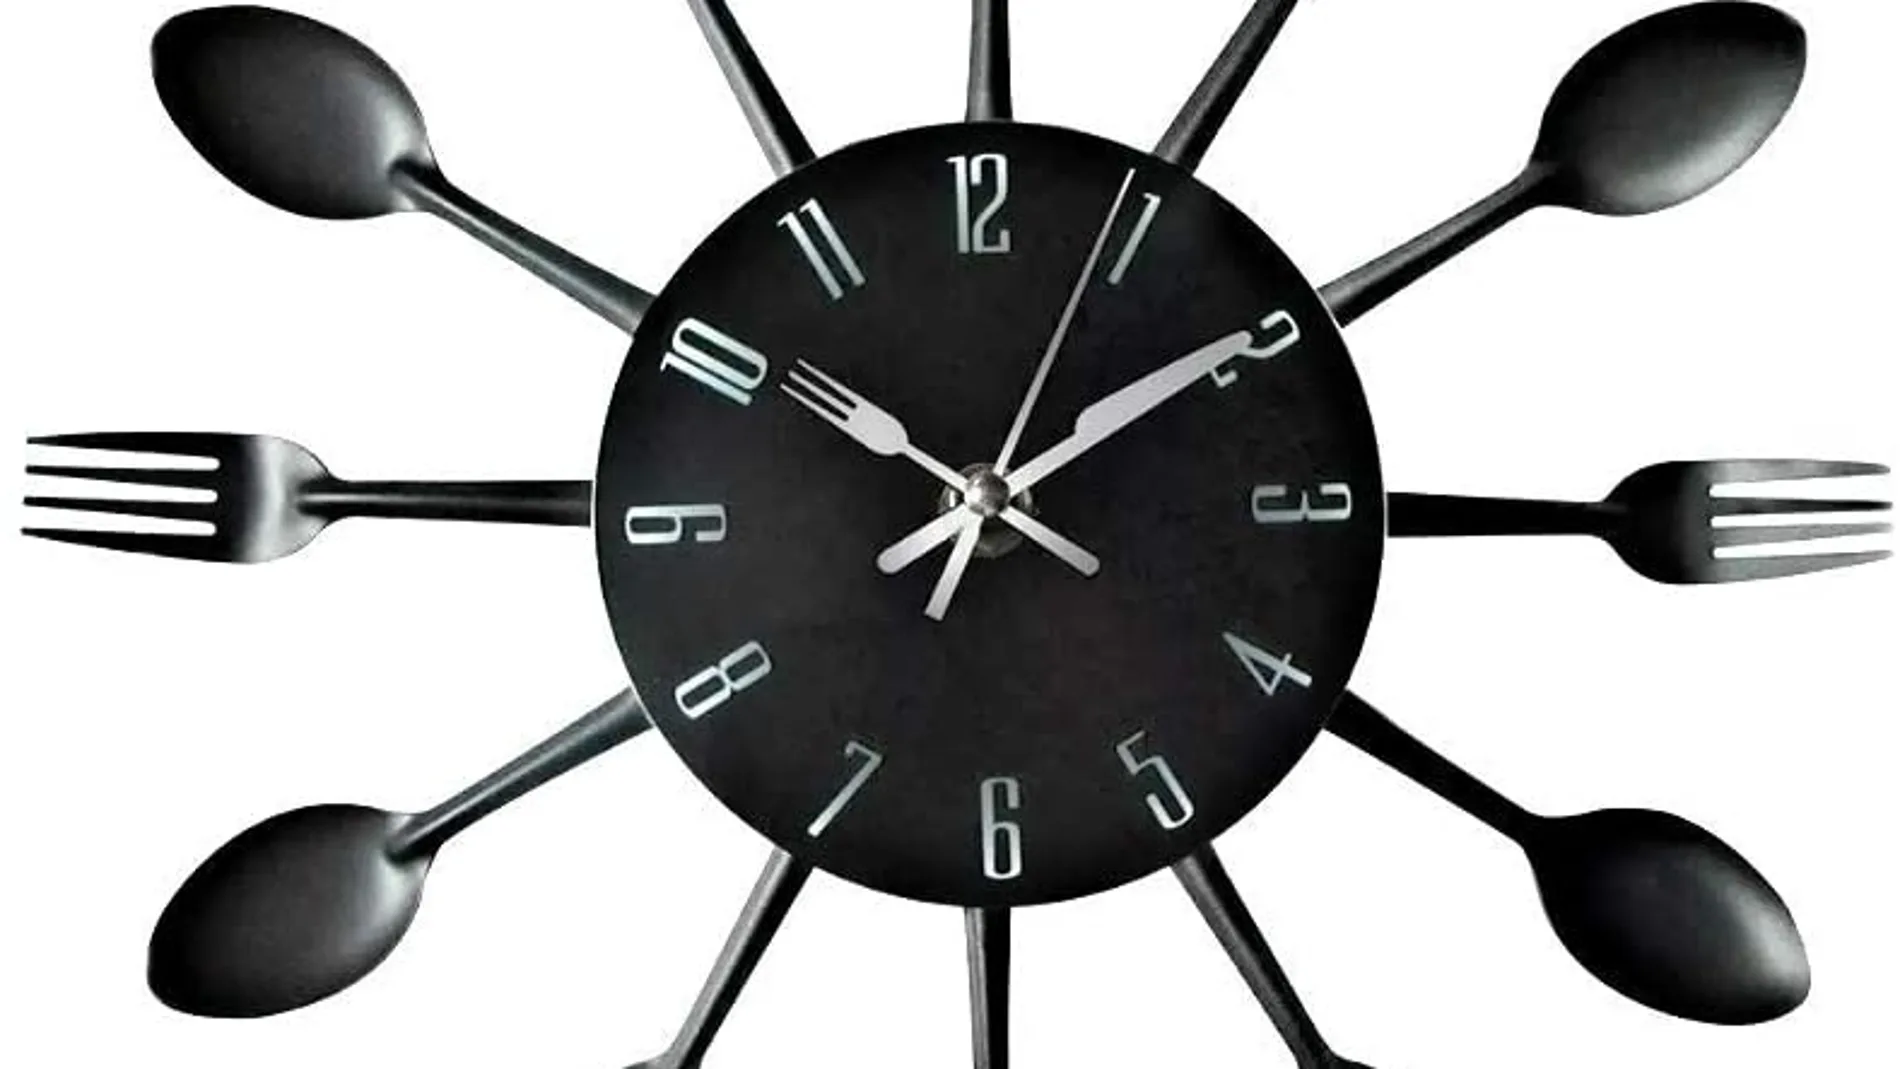 Reloj De Pared Cocina Oficina Analogo 20 Cm Grande Moderno